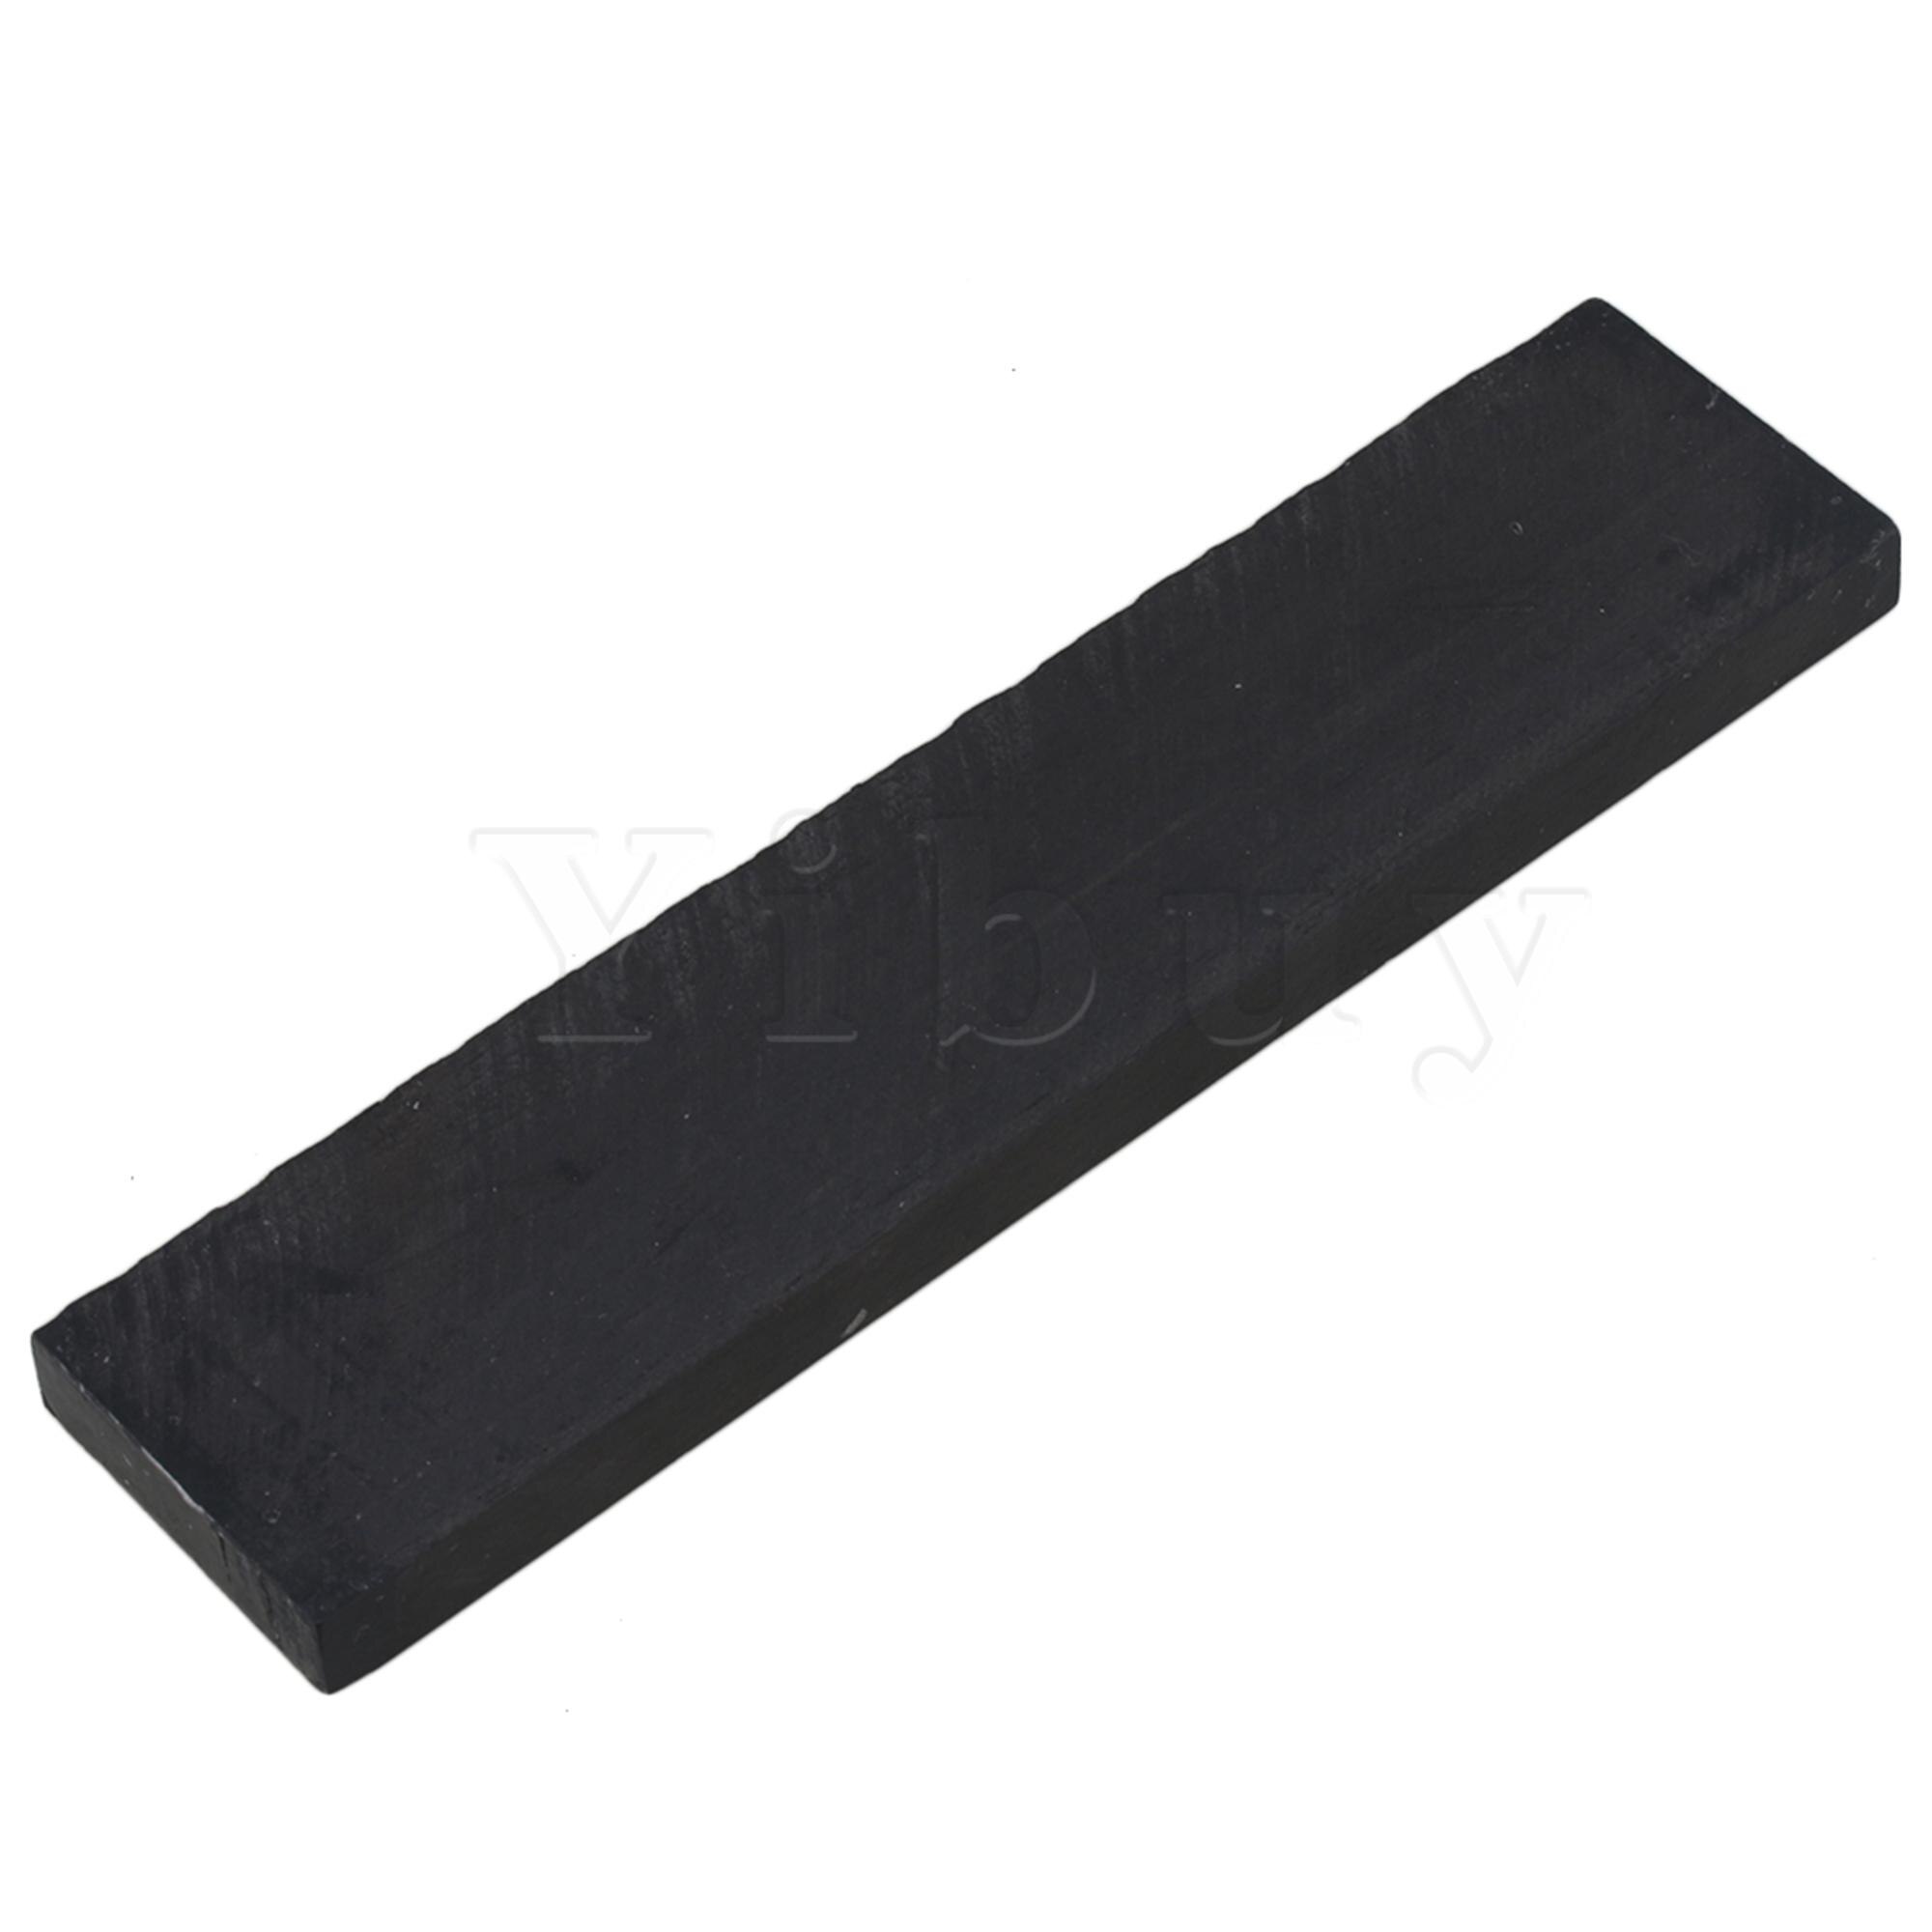 Yibuy 20 x 4.5 x 1.1cm sort diy ibenholt tømmerhåndtag blank blok til musikinstrumenter